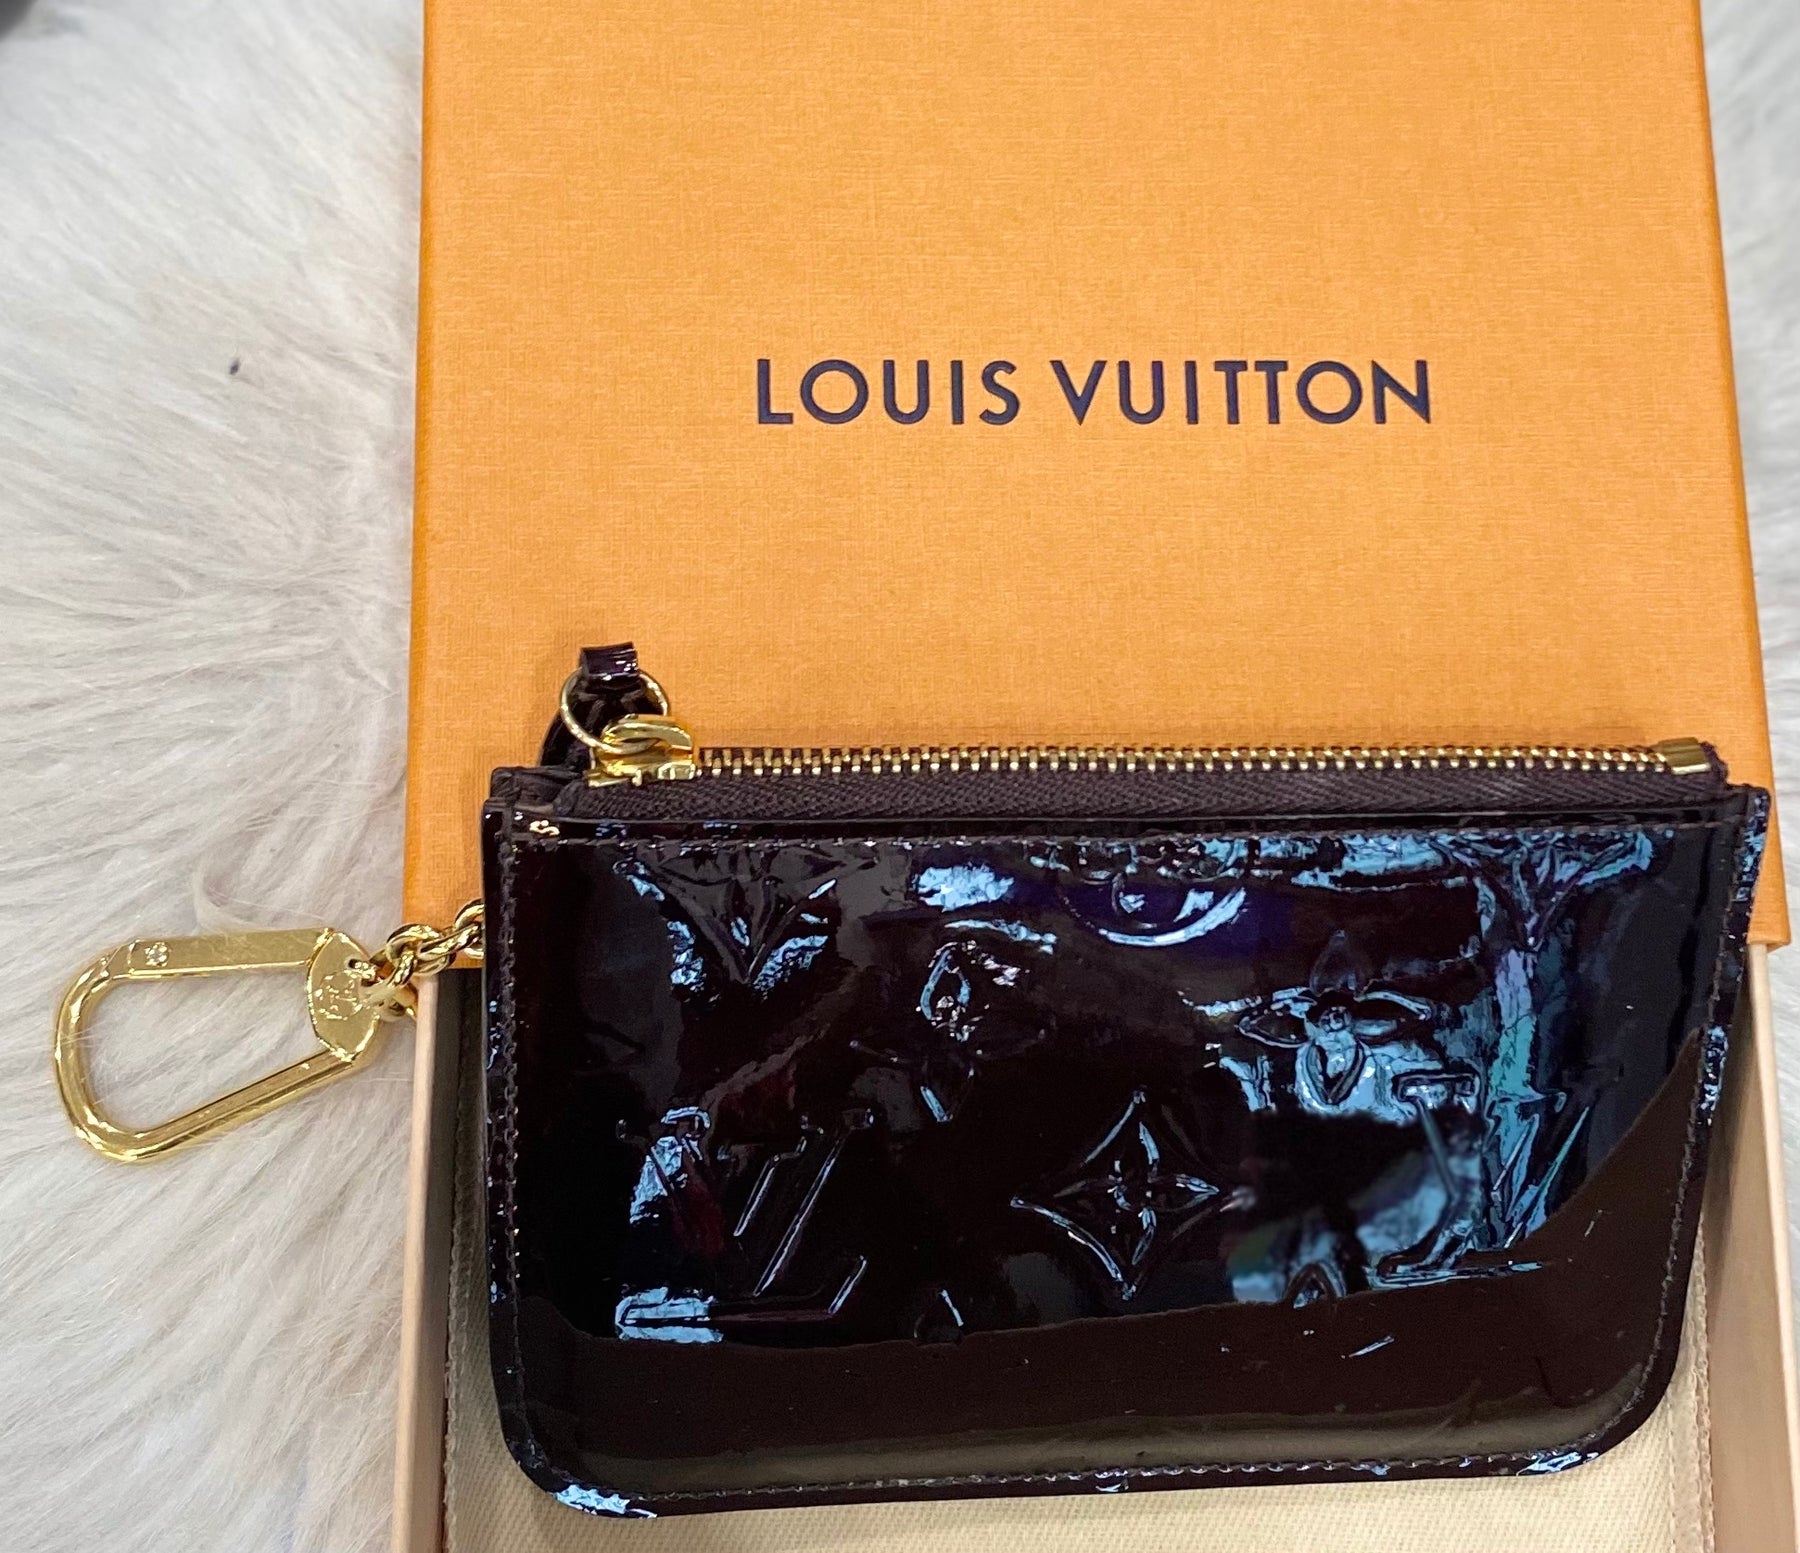 Louis Vuitton Monogram Vernis Key Pouch